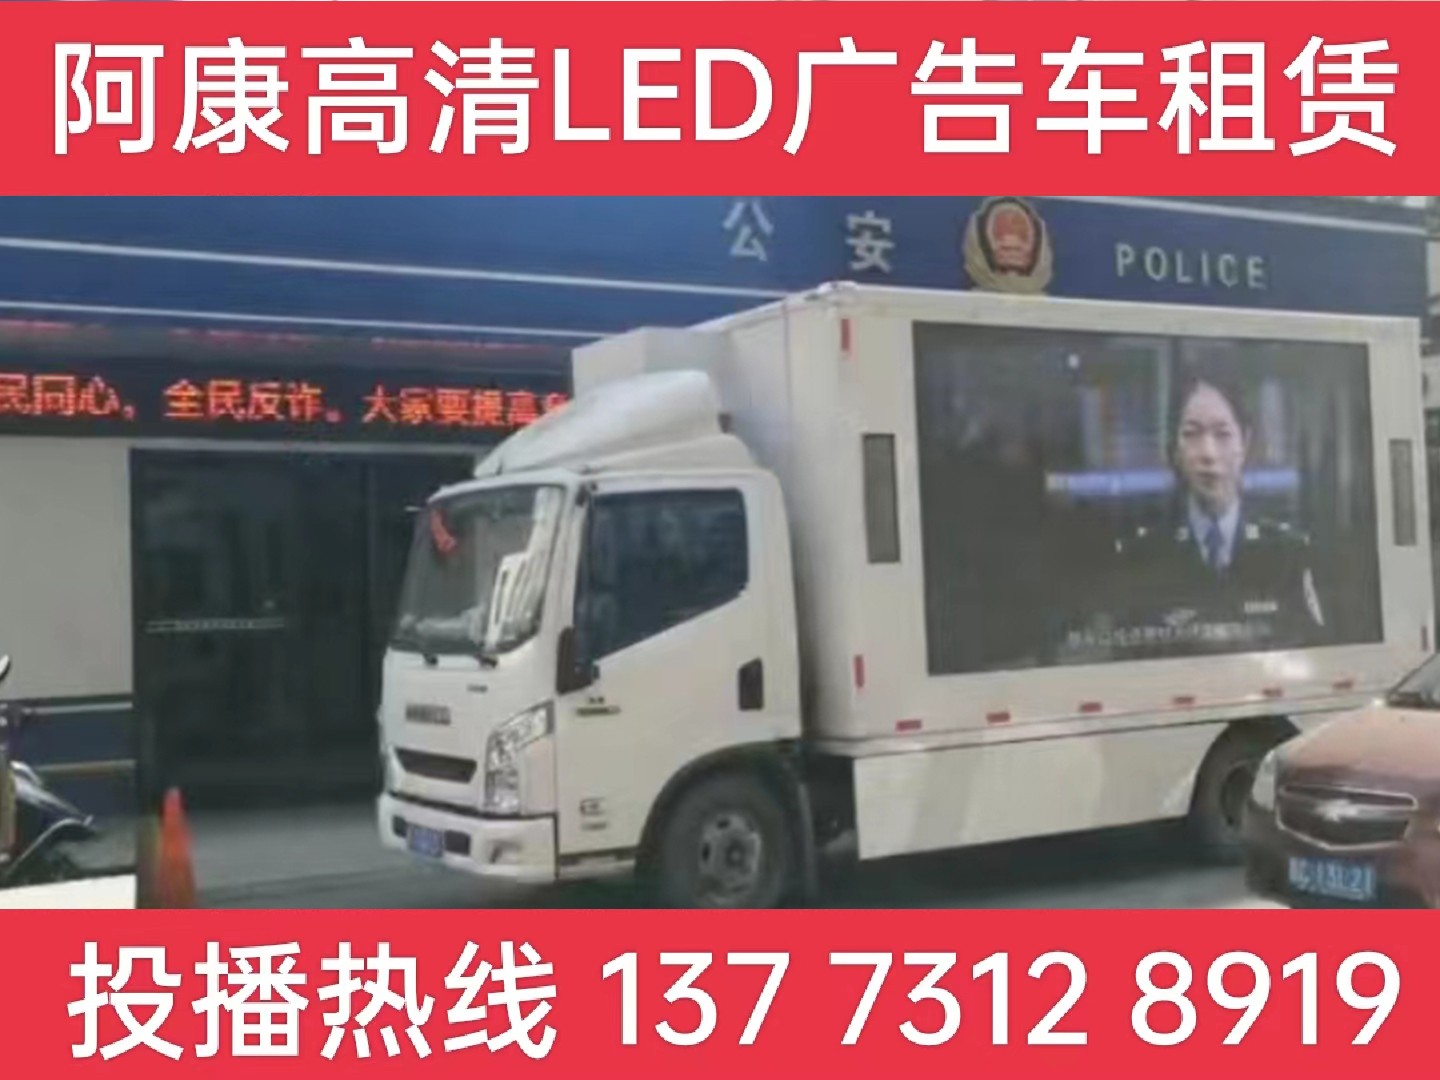 宝应LED广告车租赁-反诈宣传